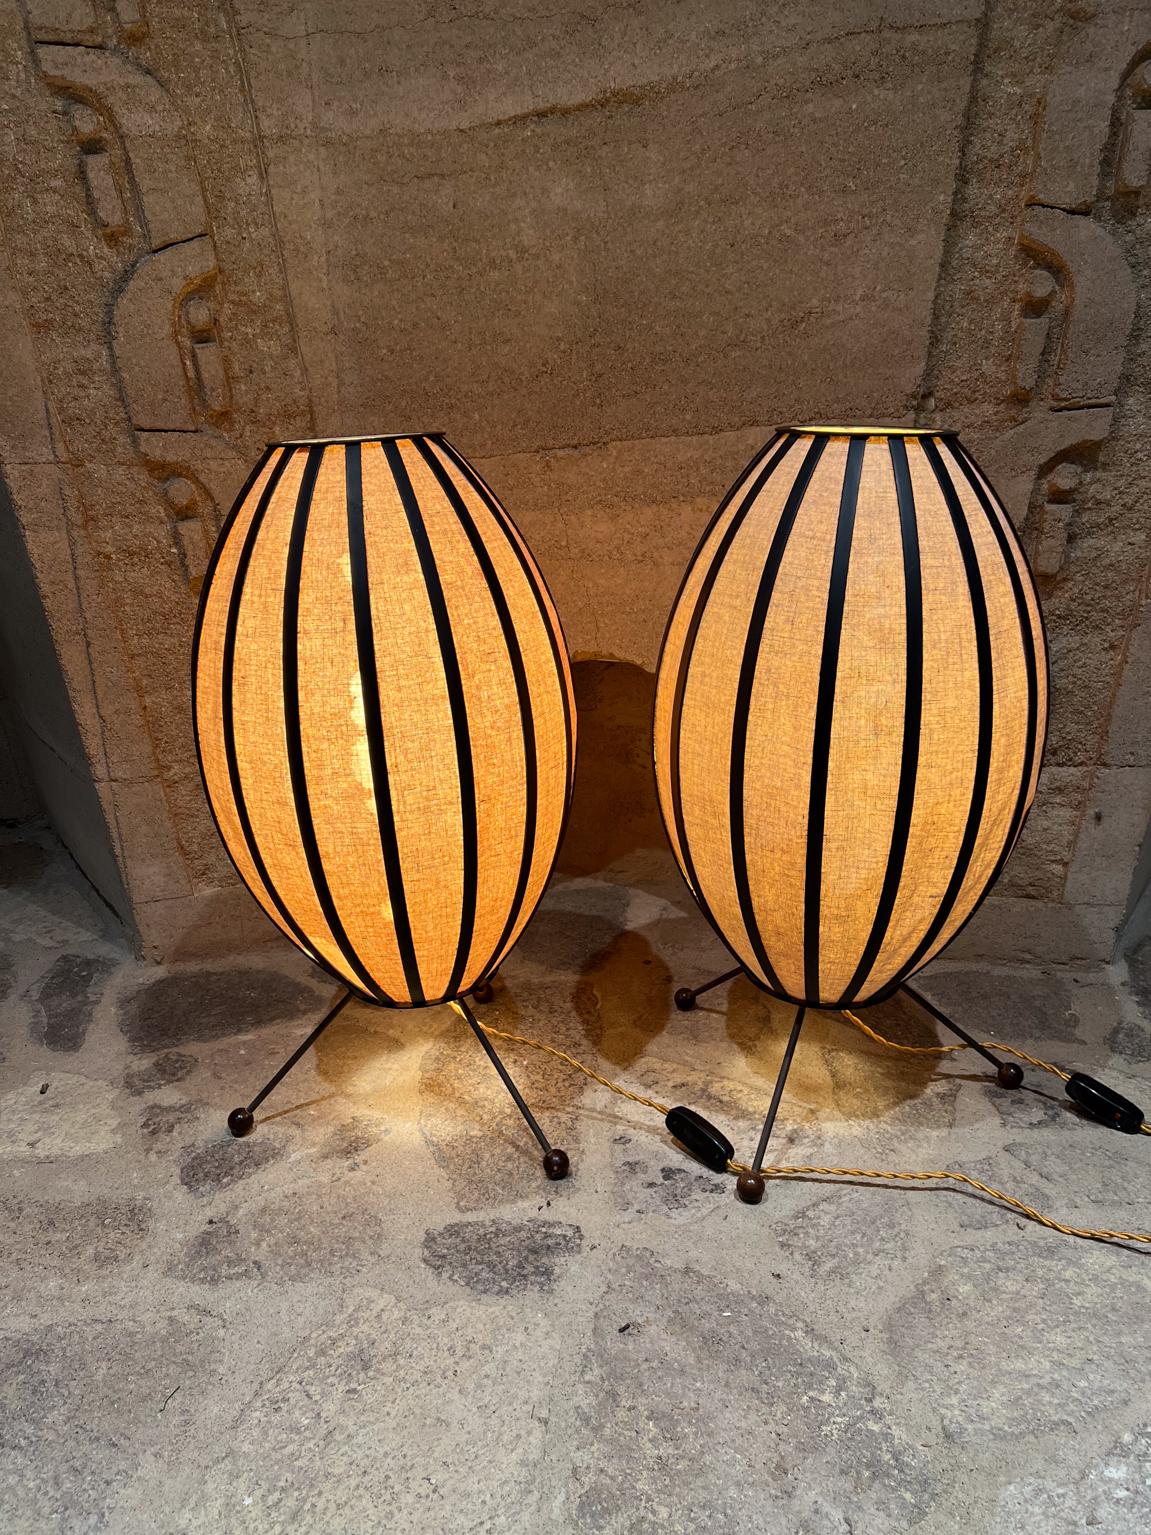 Lampes tripodes à boule George Nelson, style MCM des années 1960
25,5 h x 12,25 diamètre
Pièce sur mesure
Etat d'origine non restauré.
Se référer aux images
La livraison locale est possible. LA OC Palm Springs